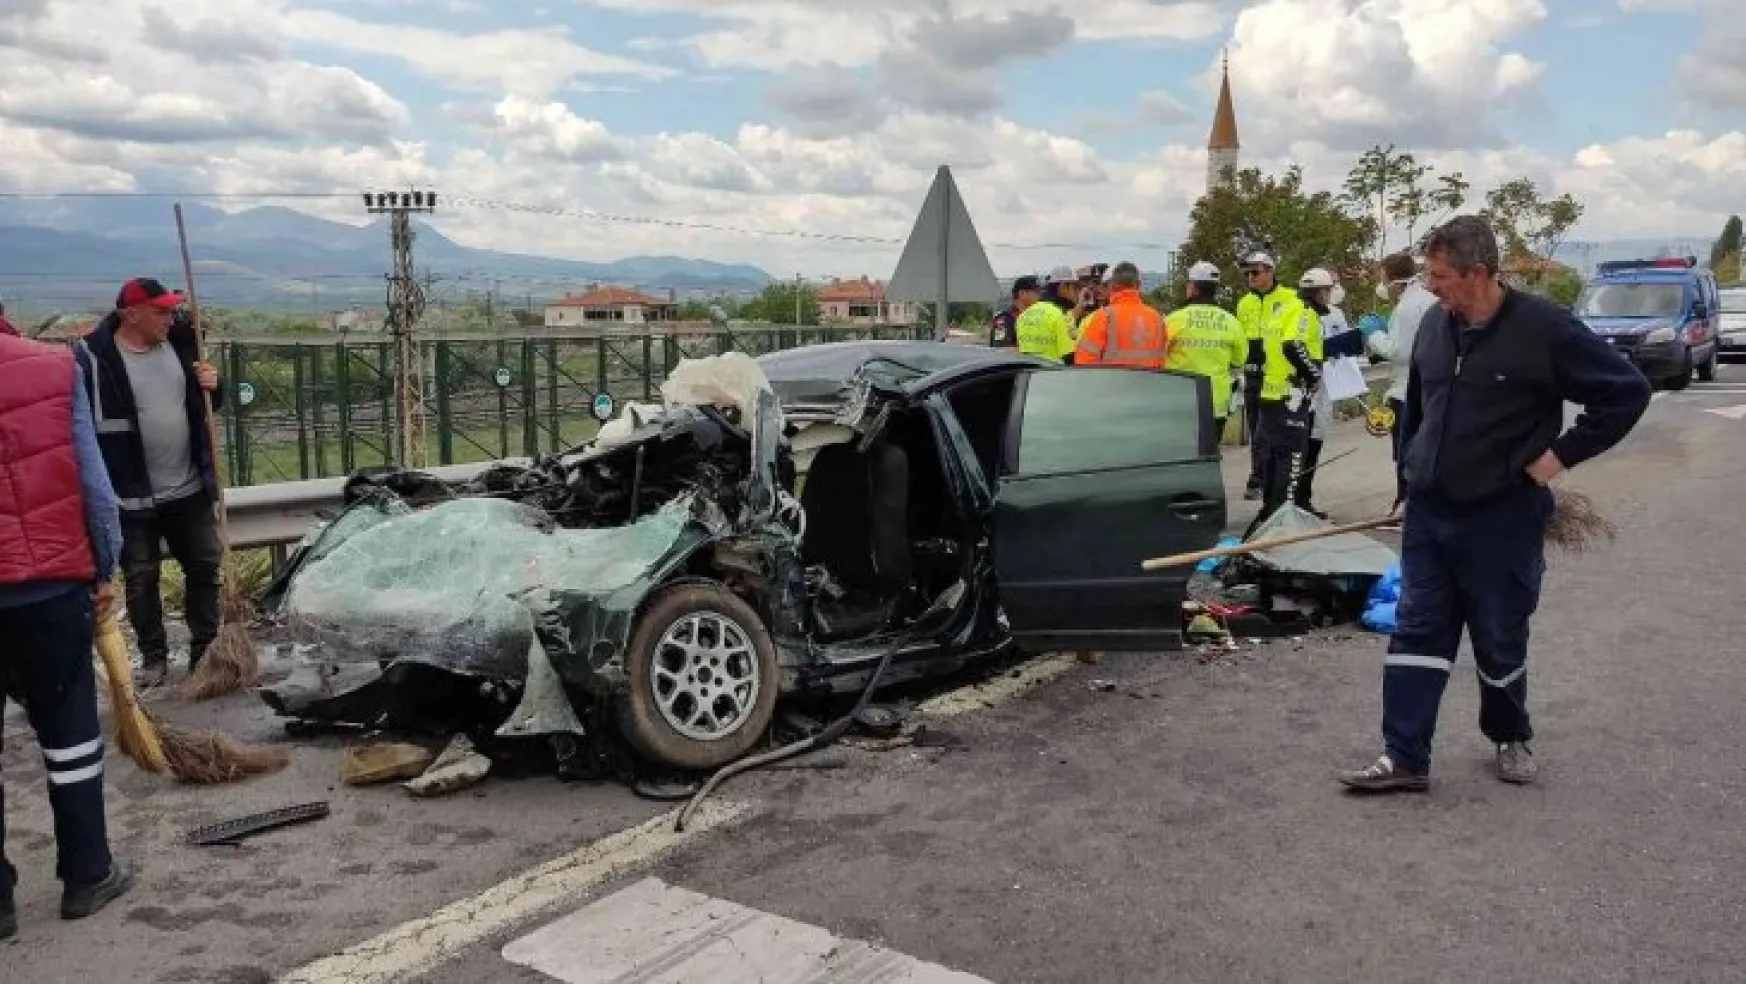 Kayseri'de trafik kazası: 3 ölü, 2 ağır yaralı